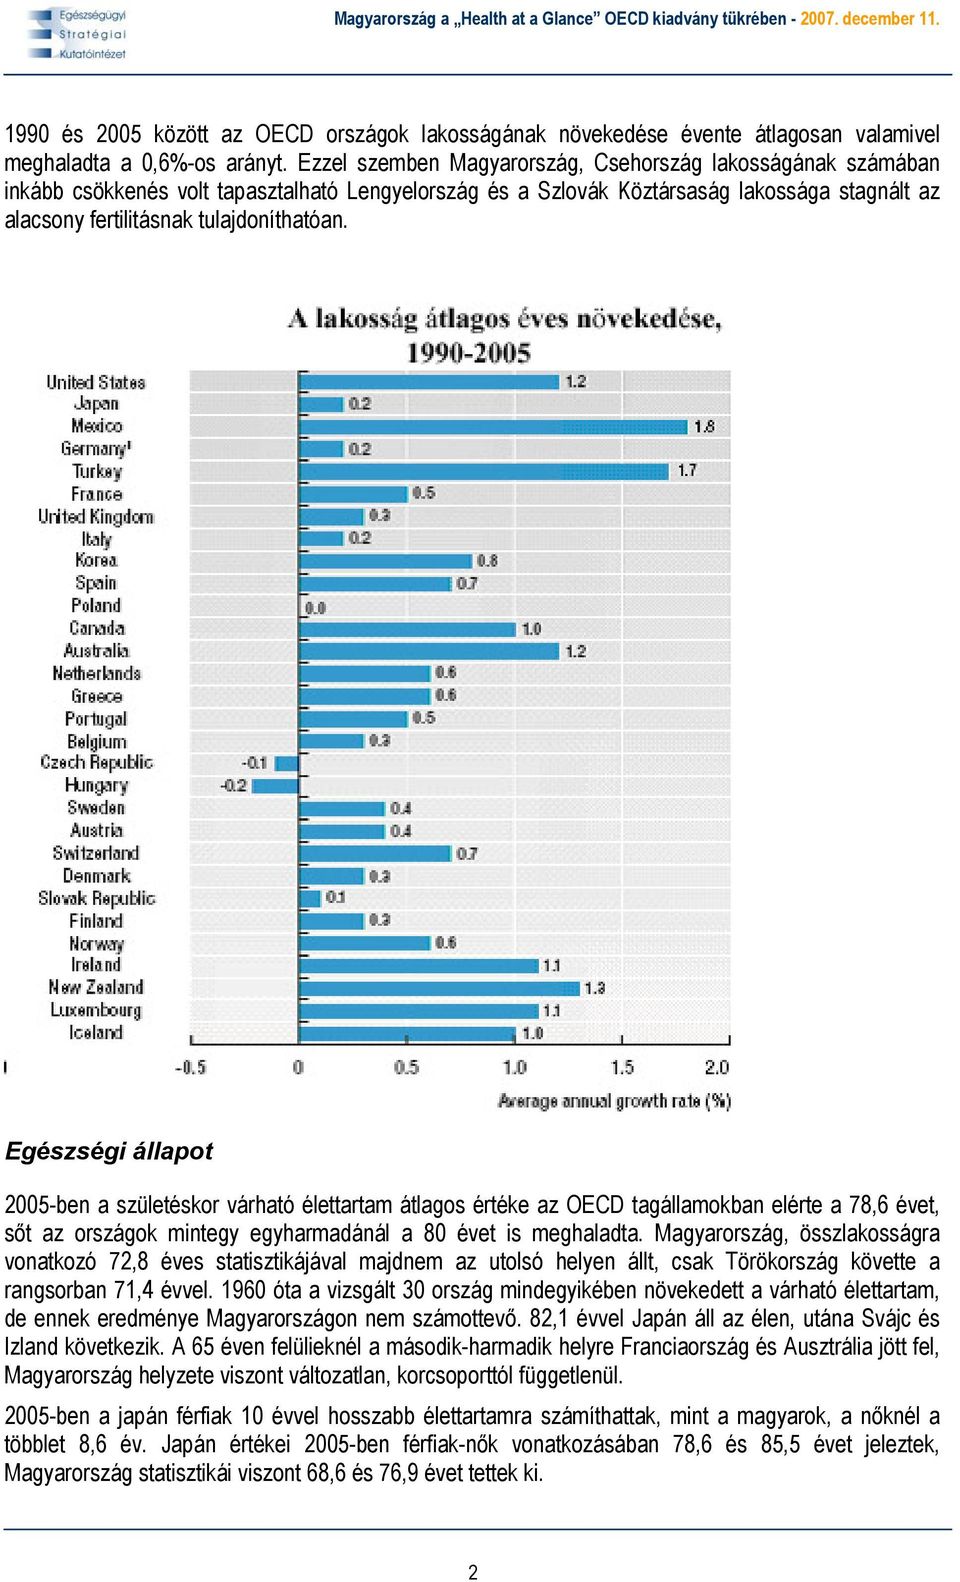 Egészségi állapot 2005-ben a születéskor várható élettartam átlagos értéke az OECD tagállamokban elérte a 78,6 évet, sőt az országok mintegy egyharmadánál a 80 évet is meghaladta.